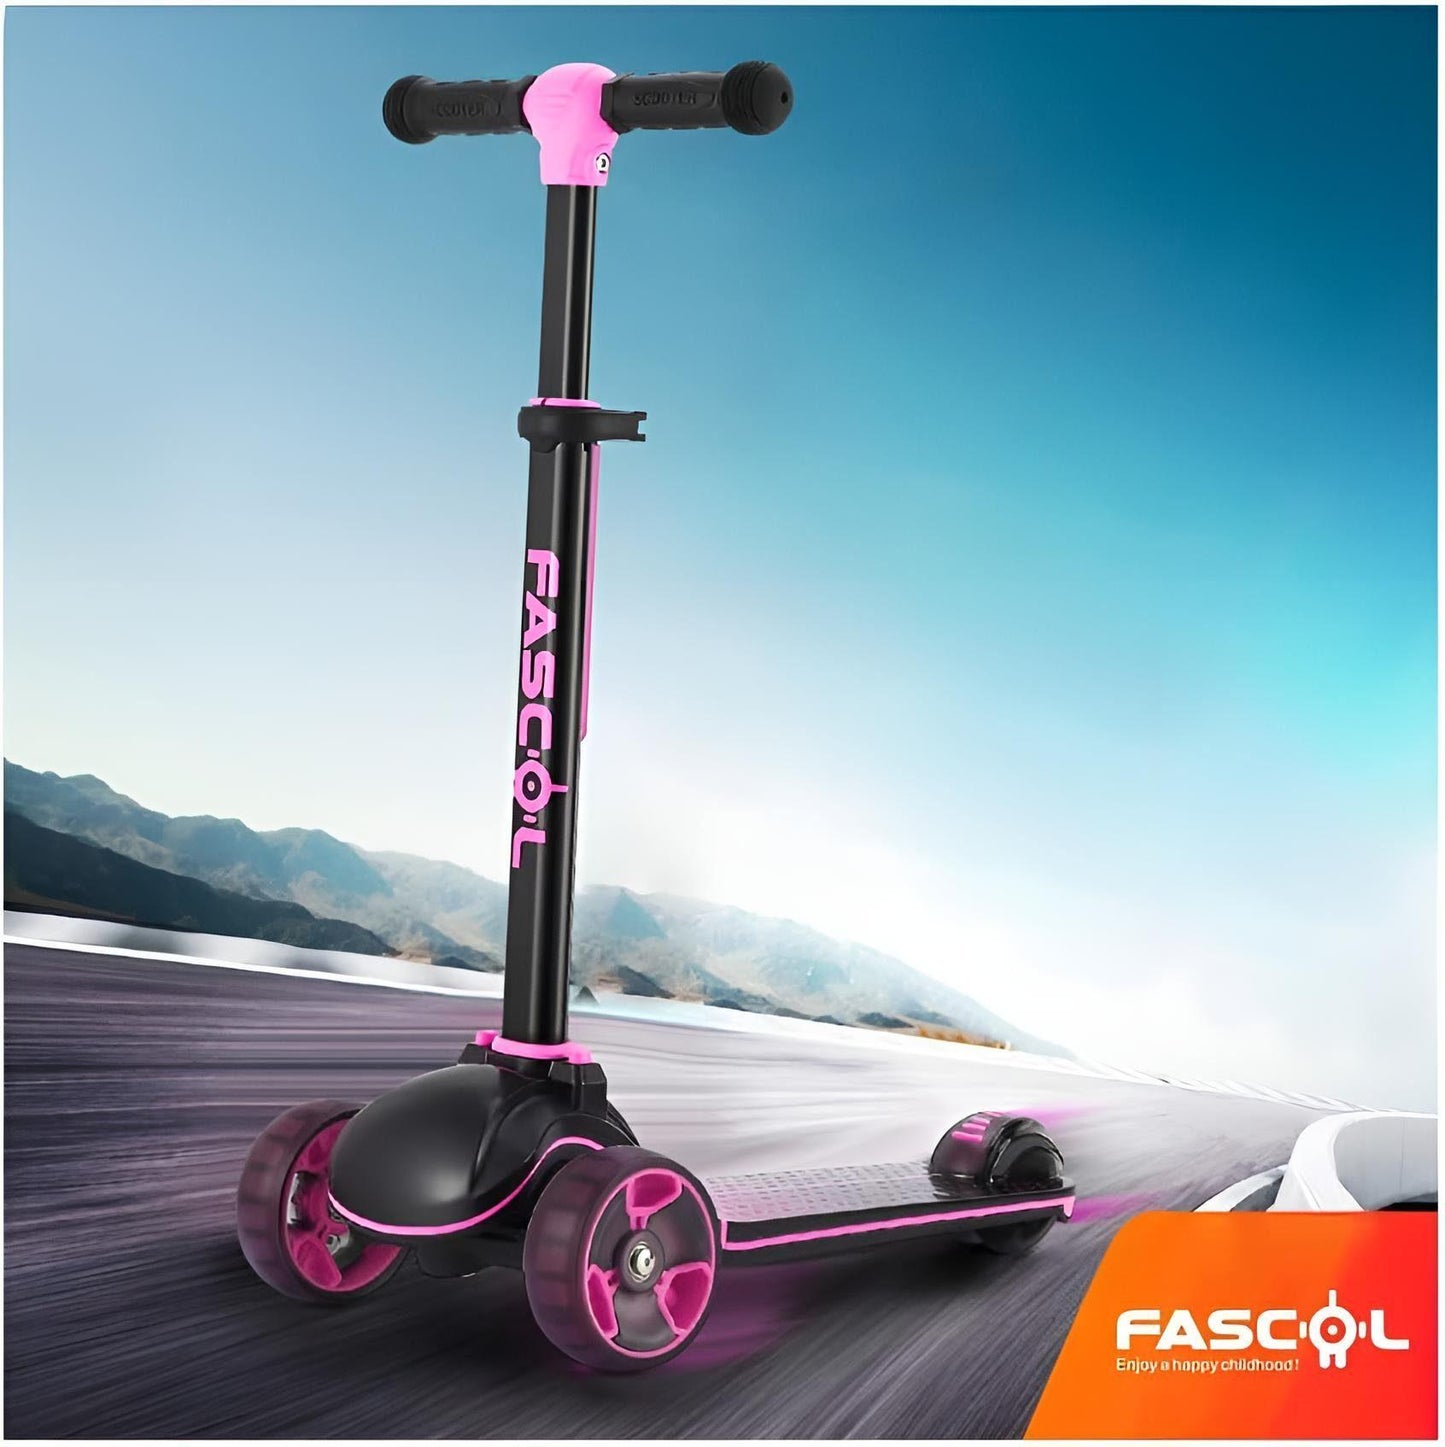 Fascol Dreiradscooter - Pink